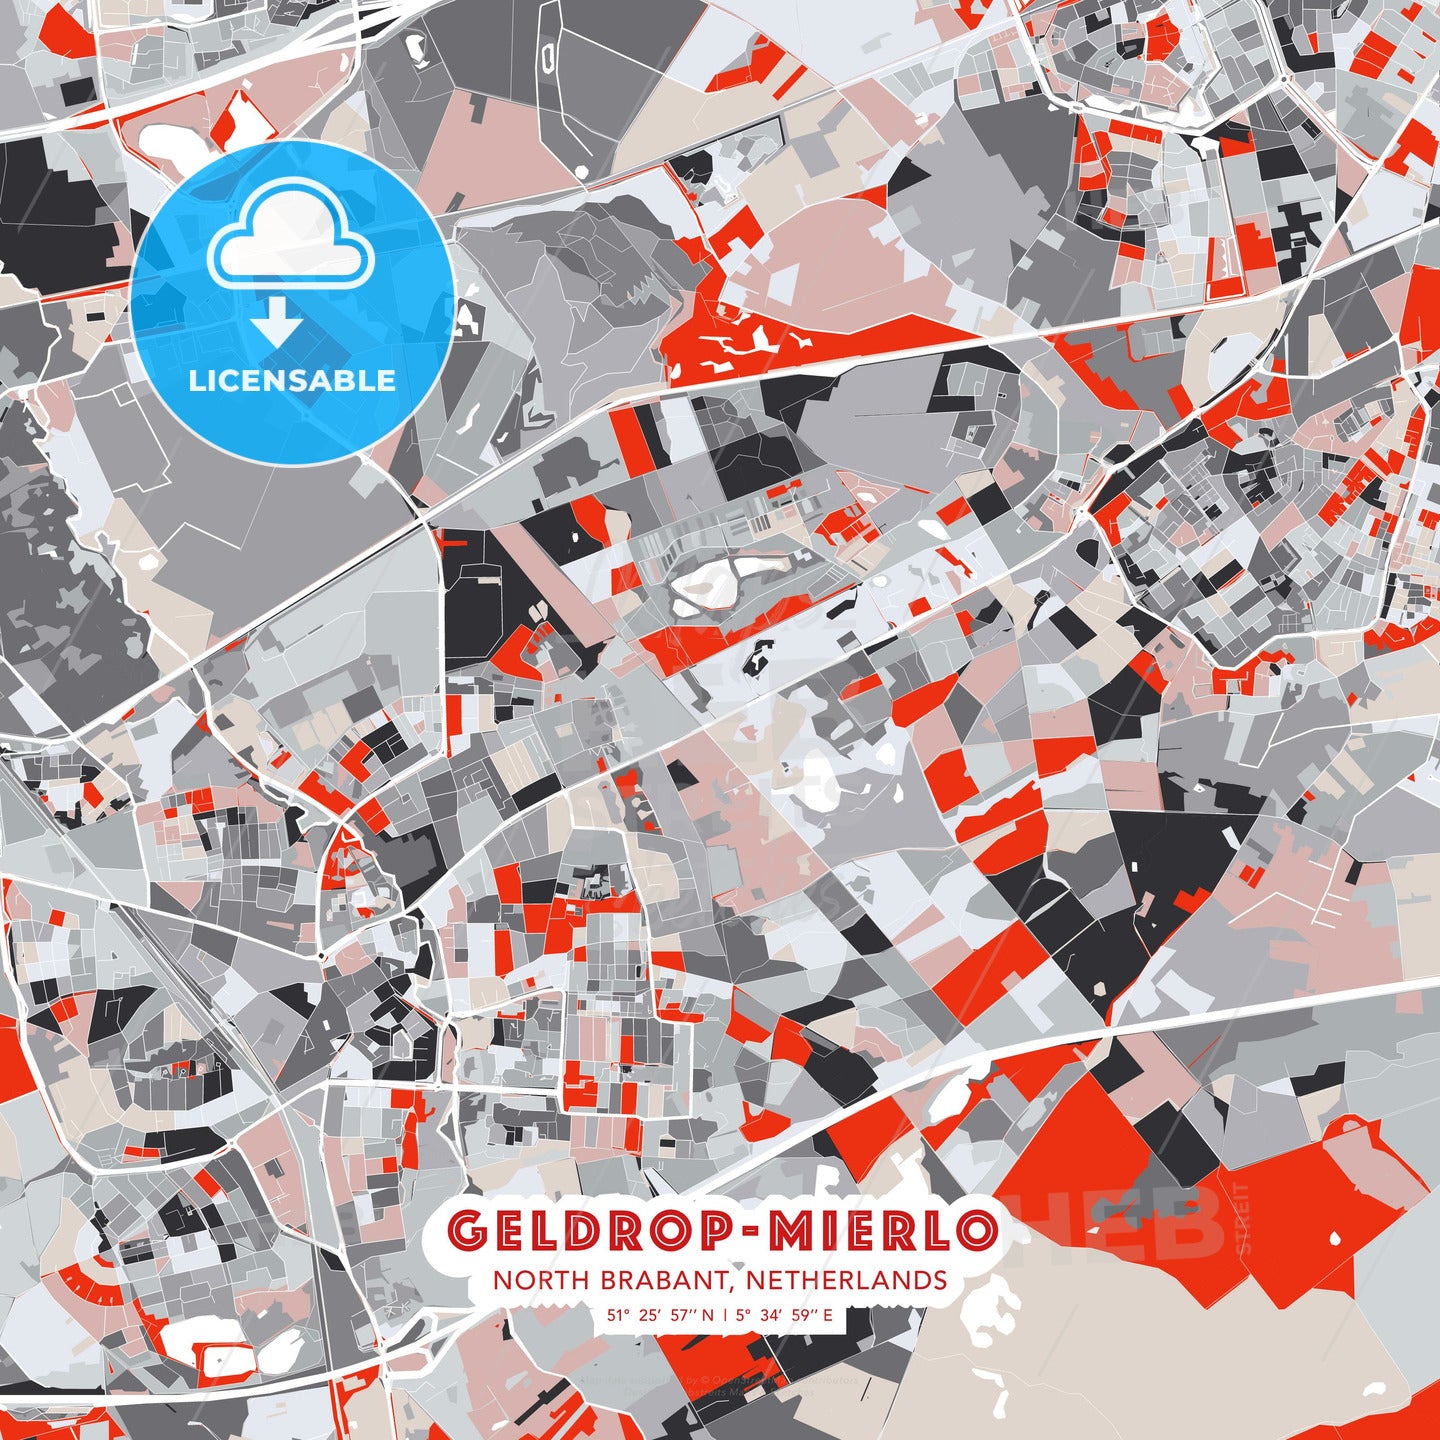 Geldrop-Mierlo, North Brabant, Netherlands, modern map - HEBSTREITS Sketches